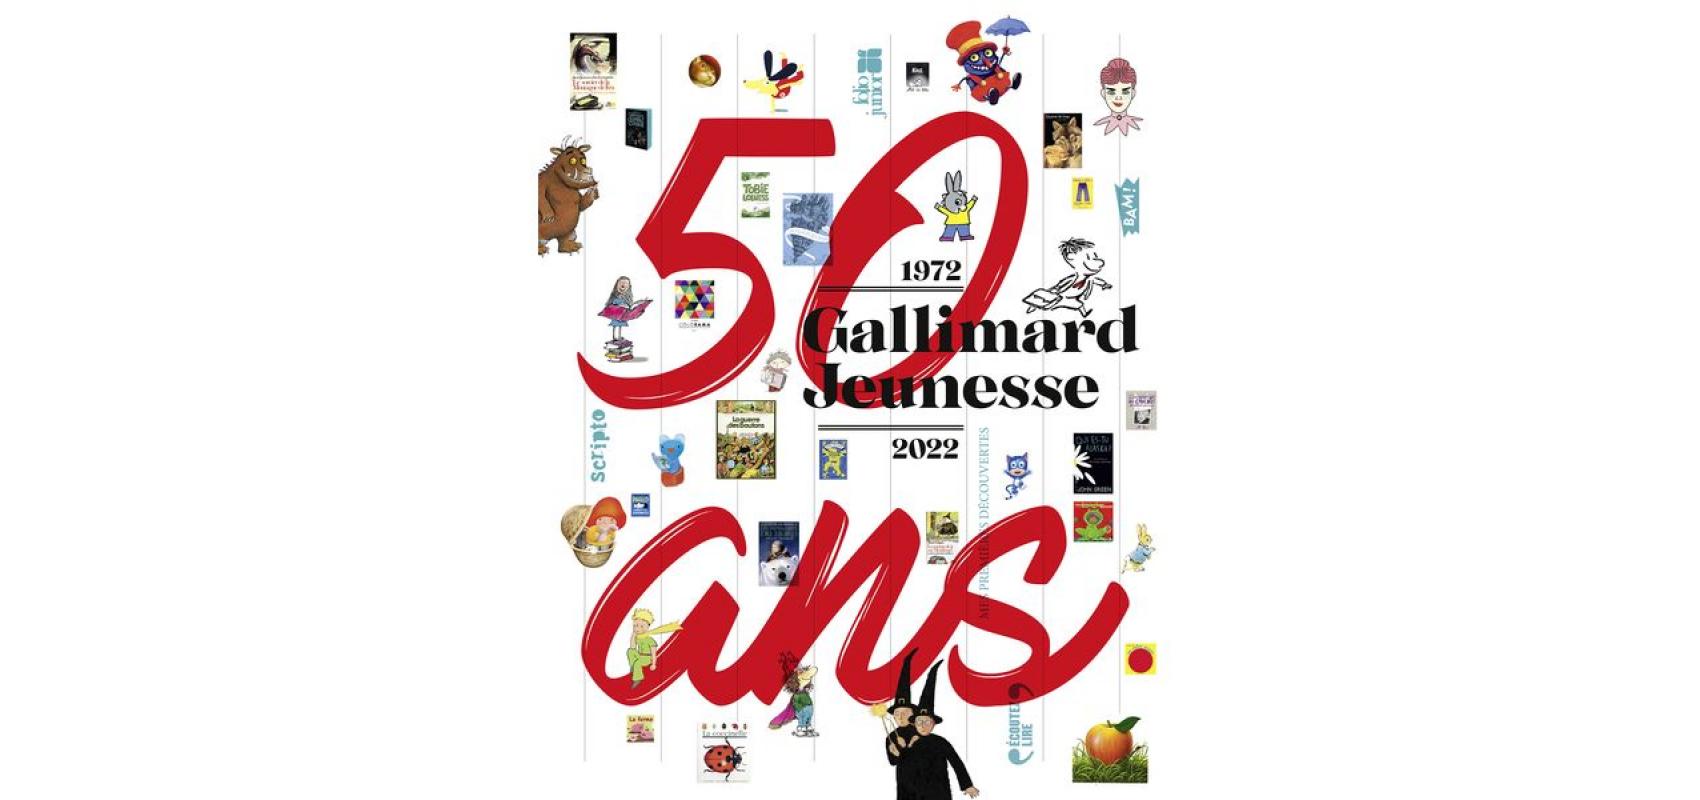 Couverture de « Gallimard jeunesse 50 ans » paru en novembre 2022 -  - © Gallimard / D.R.